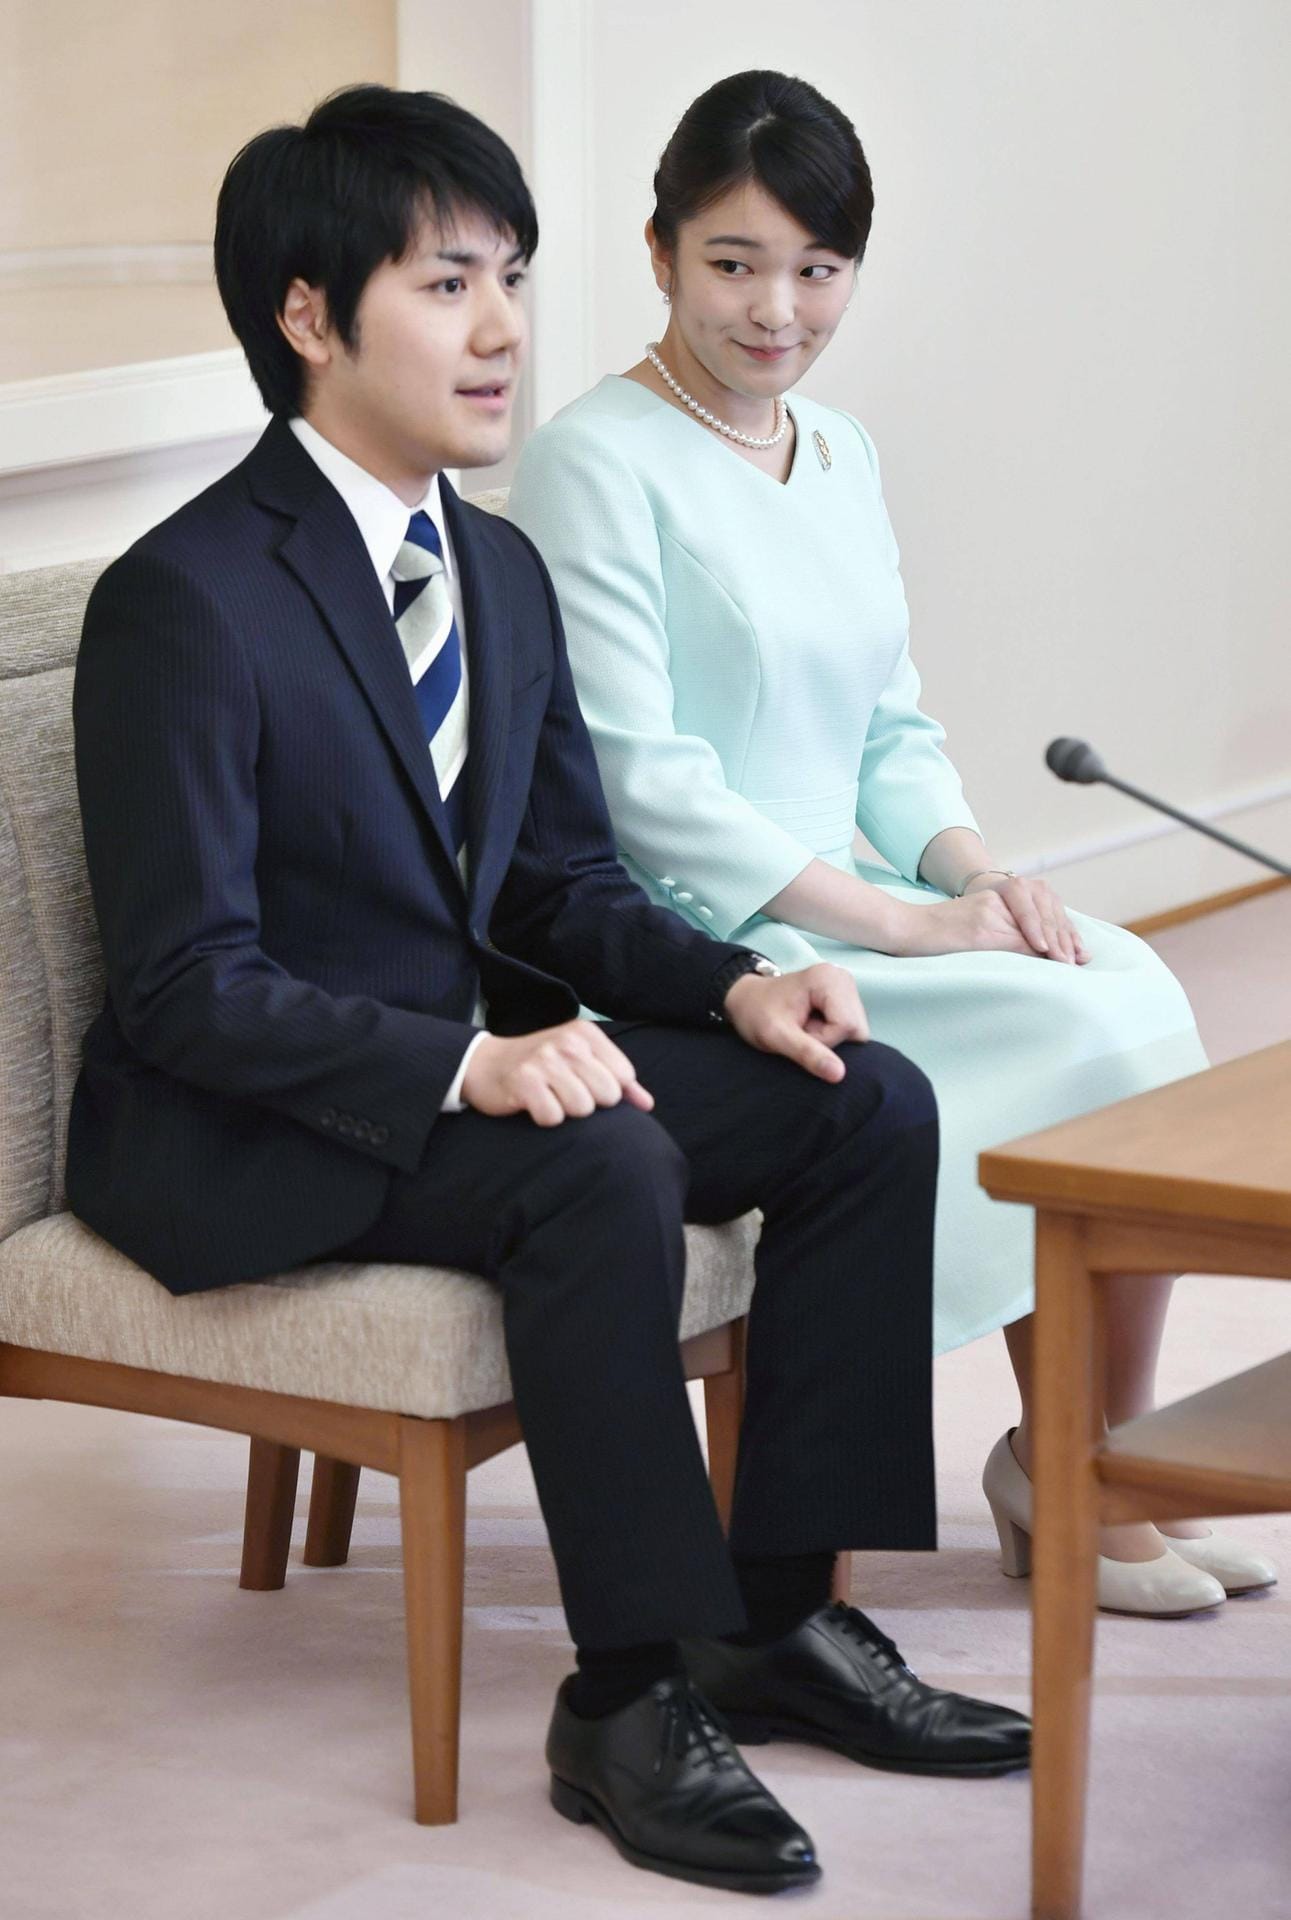 Die japanische Prinzessin Mako wird für die Liebe zu dem Bürgerlichen Kei Komuro ihre Titel aufgeben. Die beiden gaben im September 2017 ihre Verlobung bekannt und hätten eigentlich 2018 geheiratet. Doch die Hochzeit wurde auf den Wunsch der Prinzessin auf dieses Jahr im Herbst verschoben. Mit dem Jawort verliert Mako ihre Titel und den Status als Angehörige des Kaiserhauses.